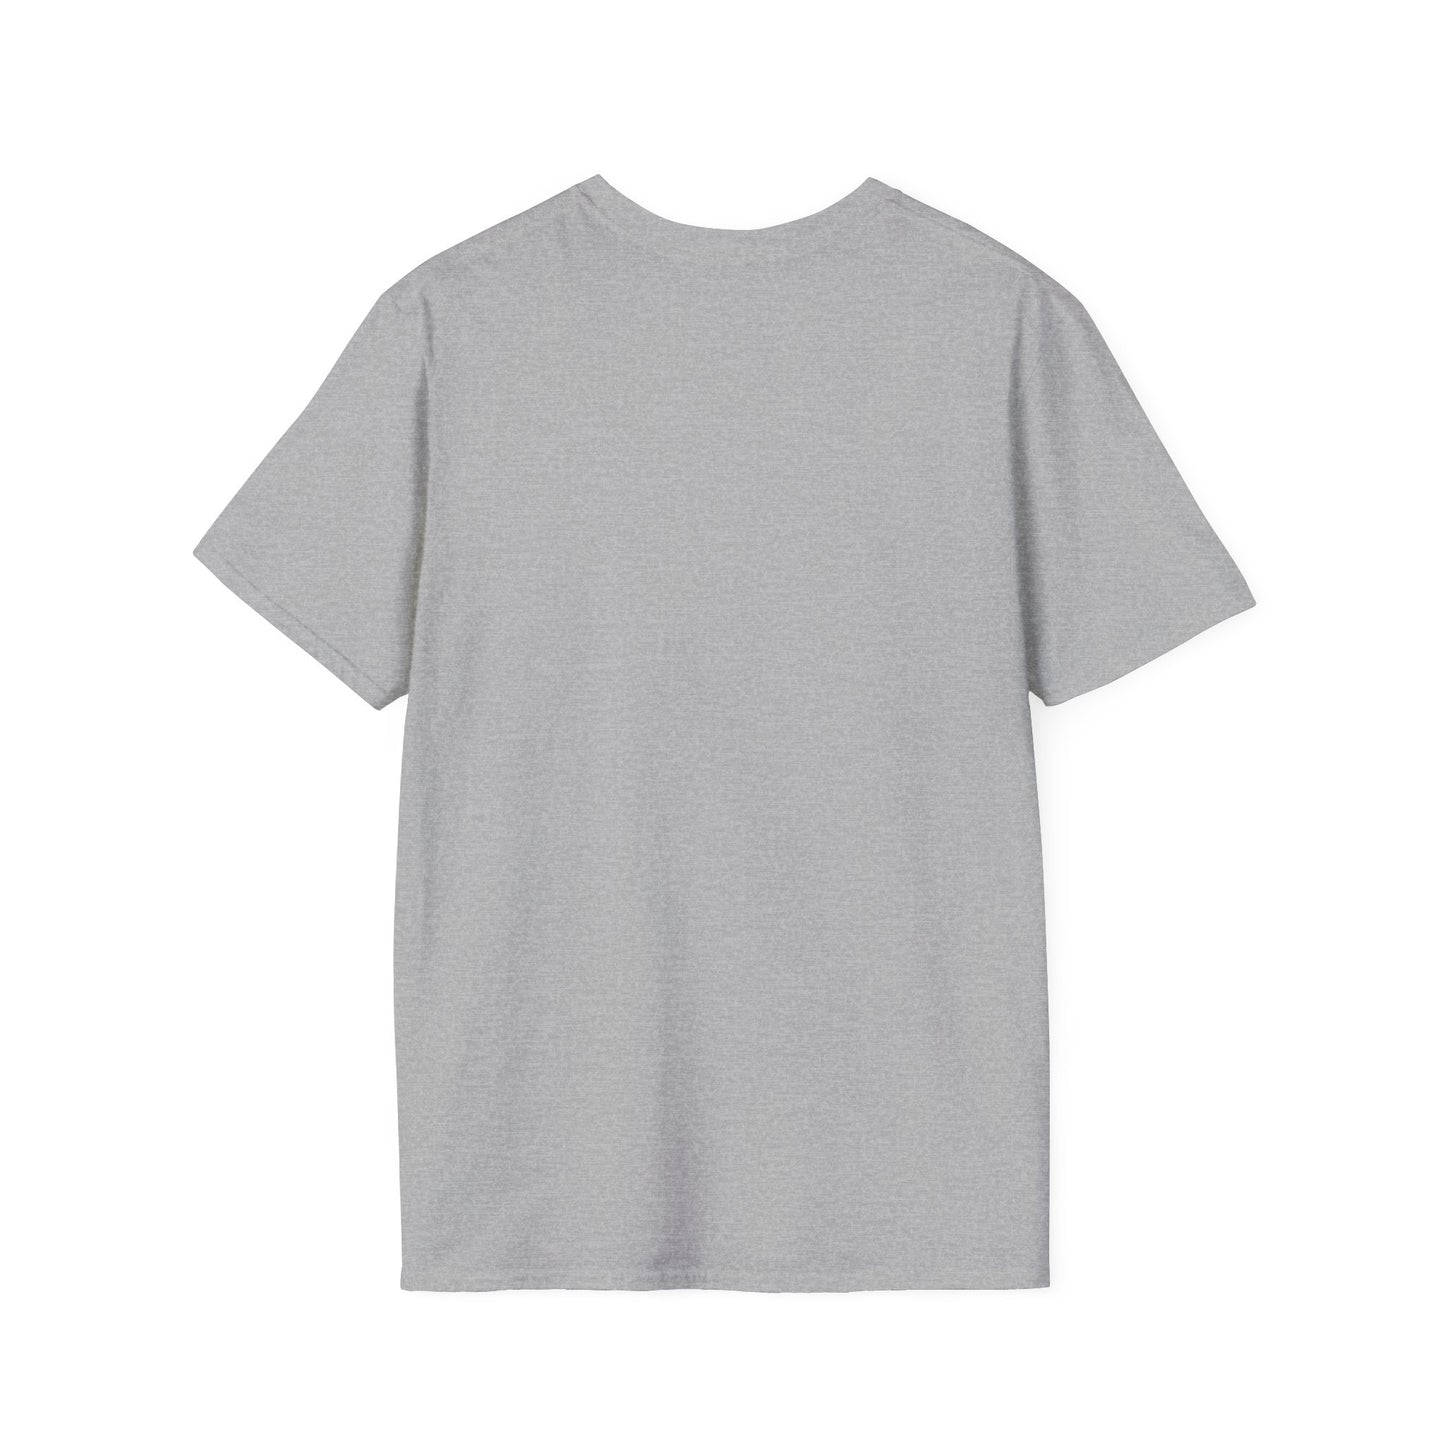 CORGI 3 NASDA  Unisex Softstyle T-Shirt